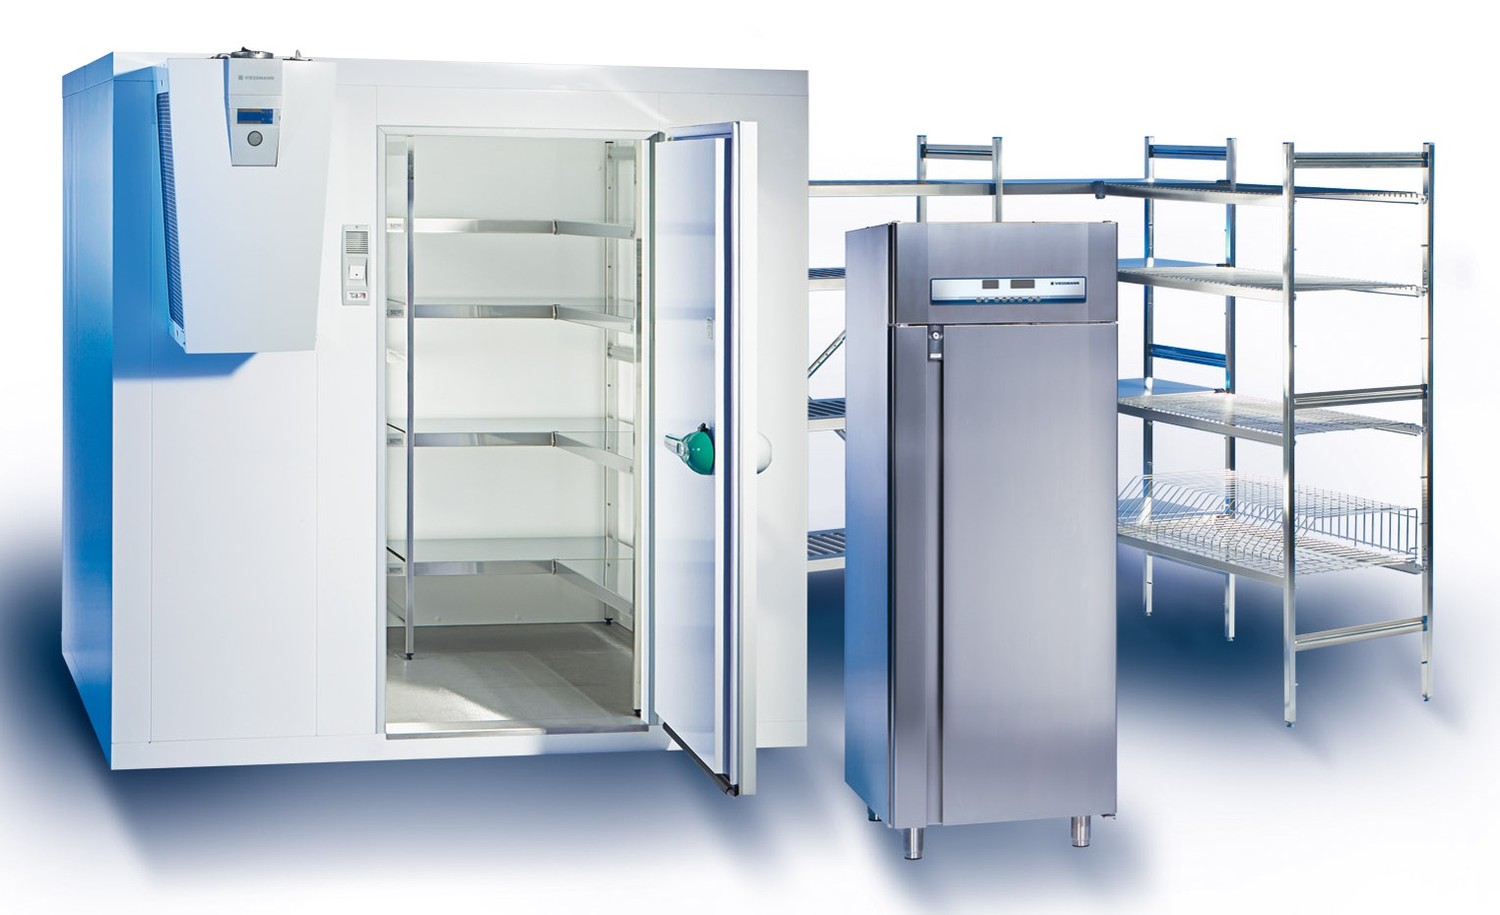 ООО «НХК-ДВ» специализируется на ремонте, продаже, обслуживании холодильного оборудования и кондиционеров.